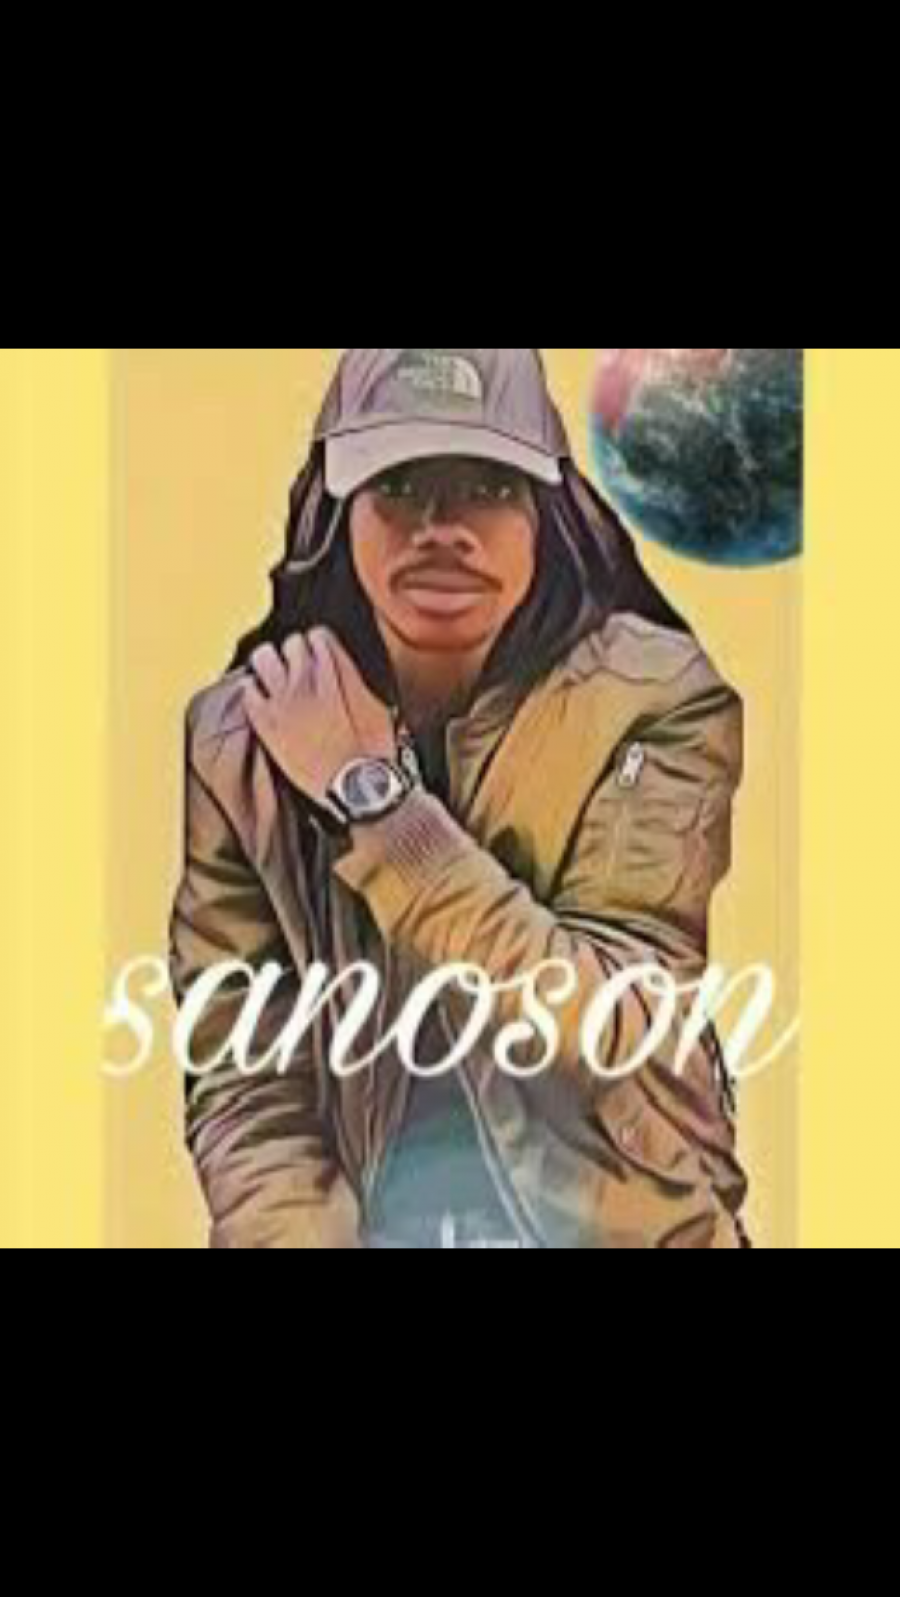 SANOSON